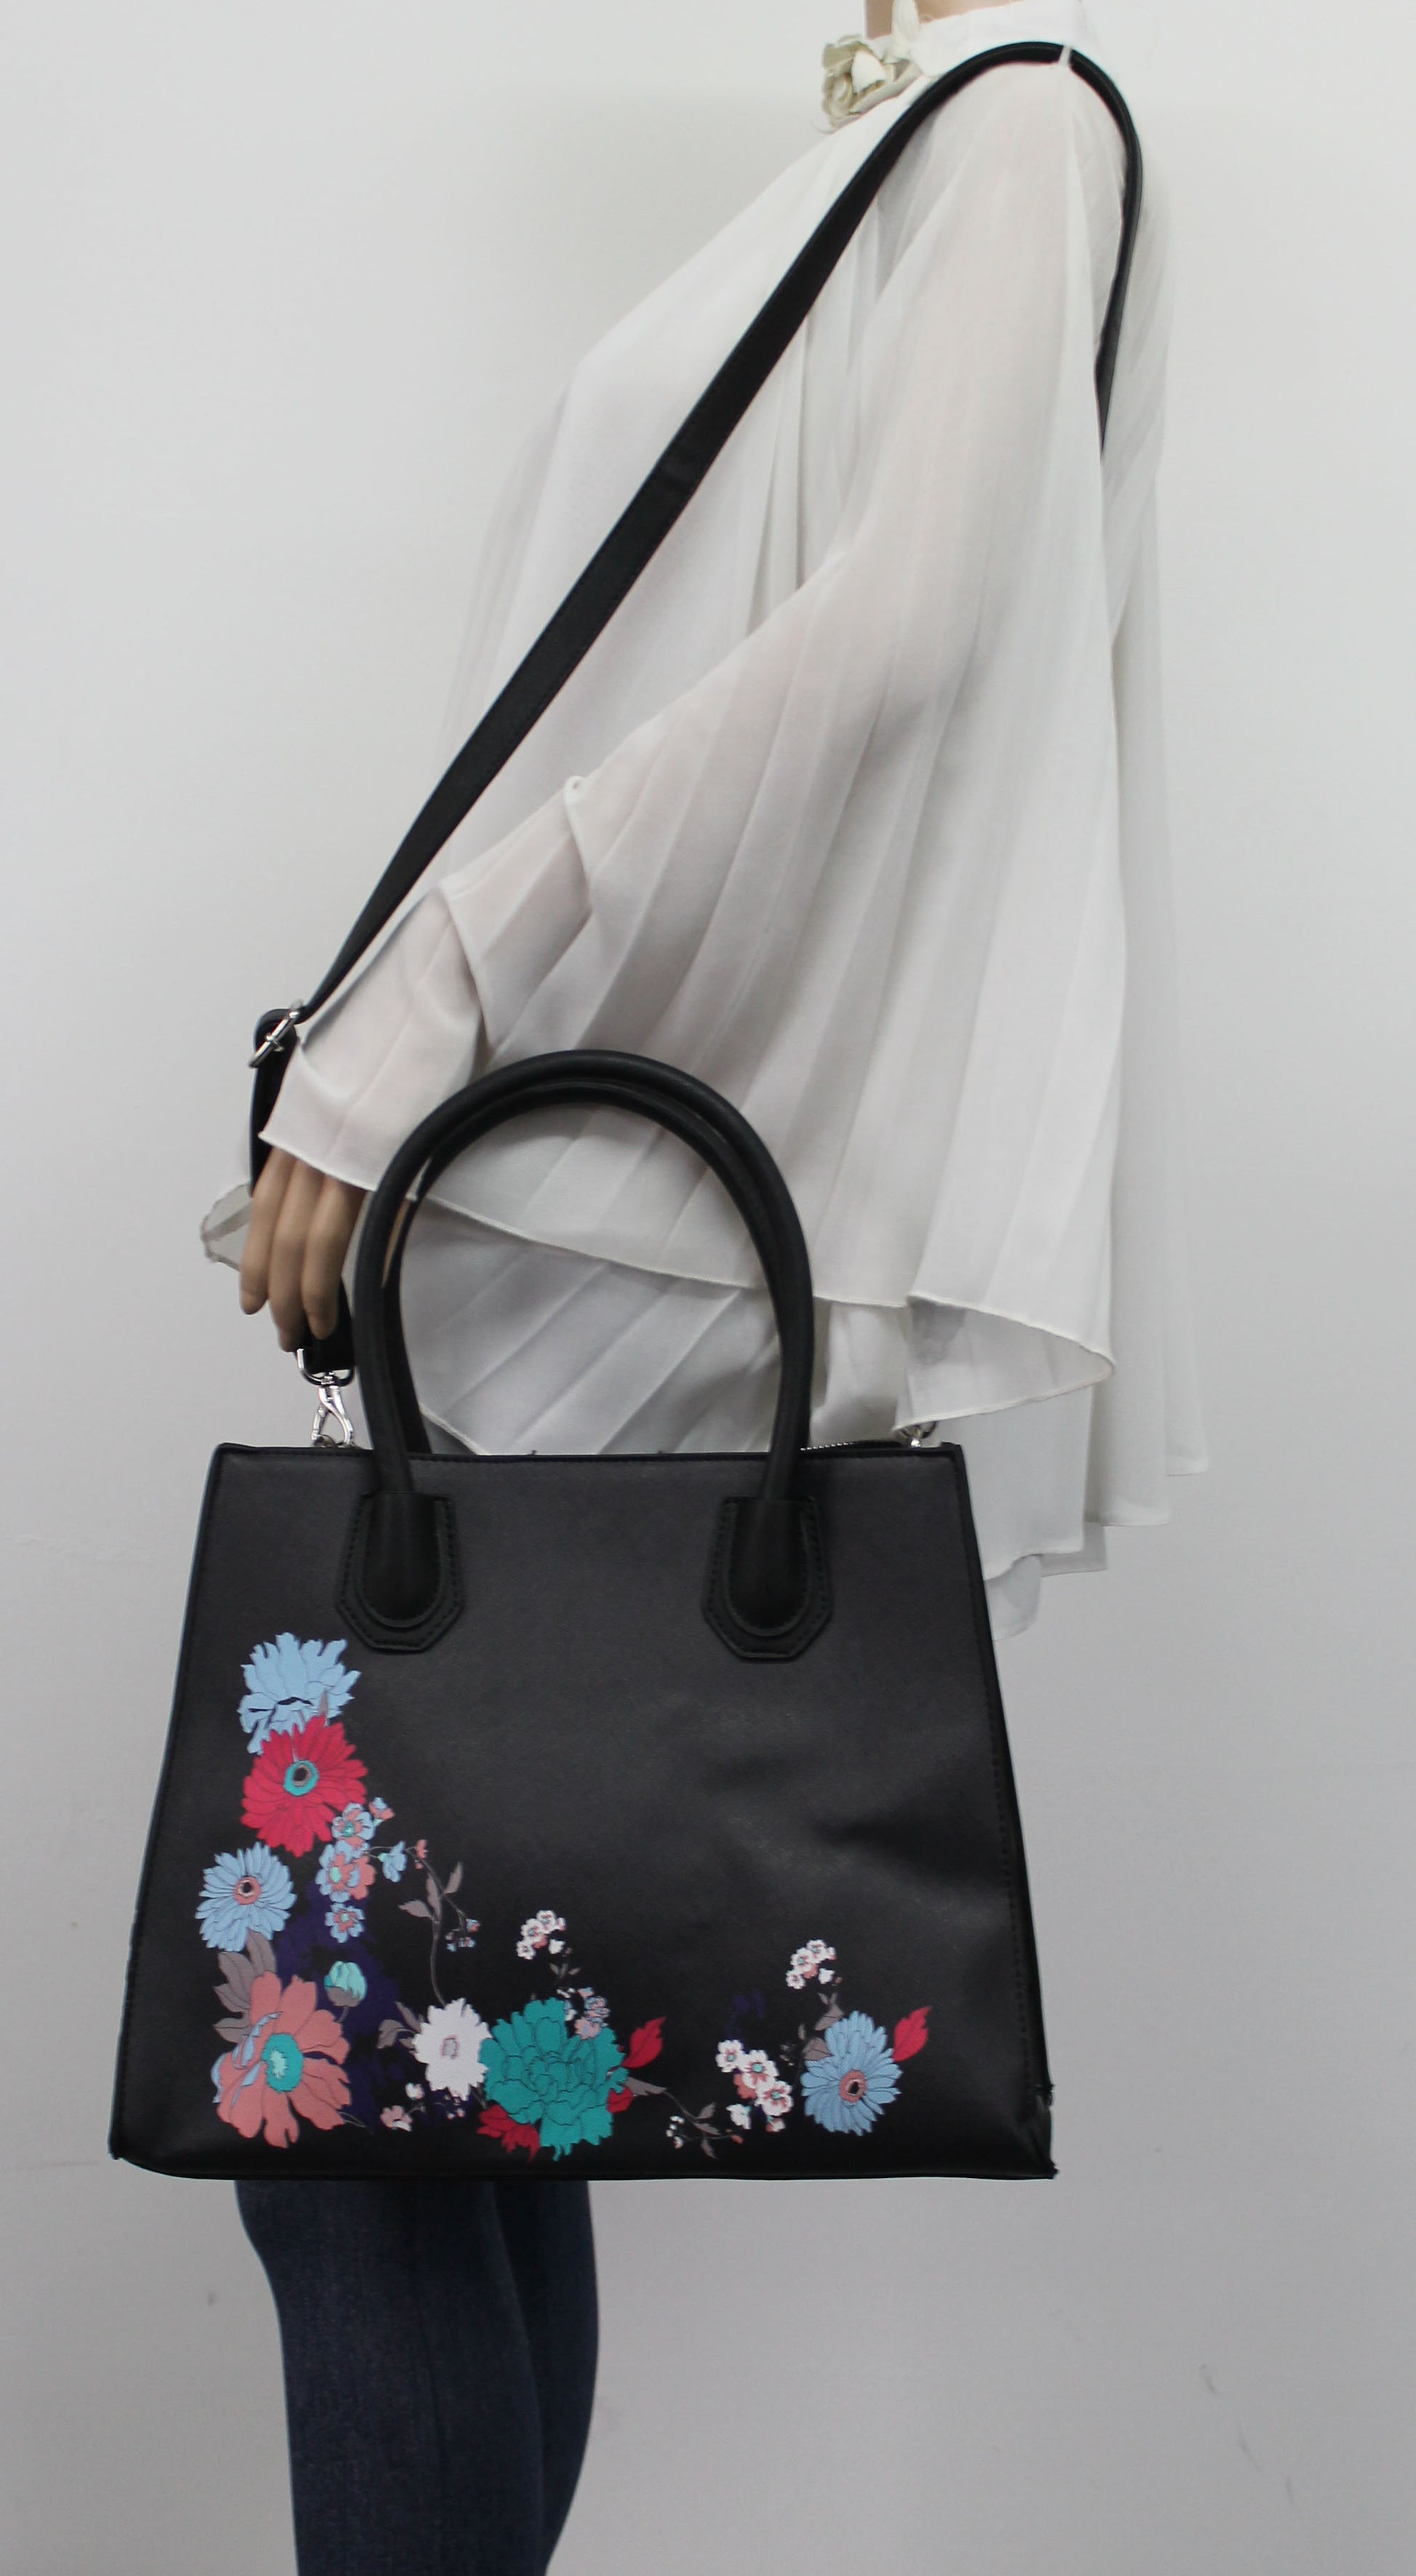 Hanna Floral Handbag BlackBeautiful Cute Animal Faux Leather Clutch Bag Handles Strap Summer School